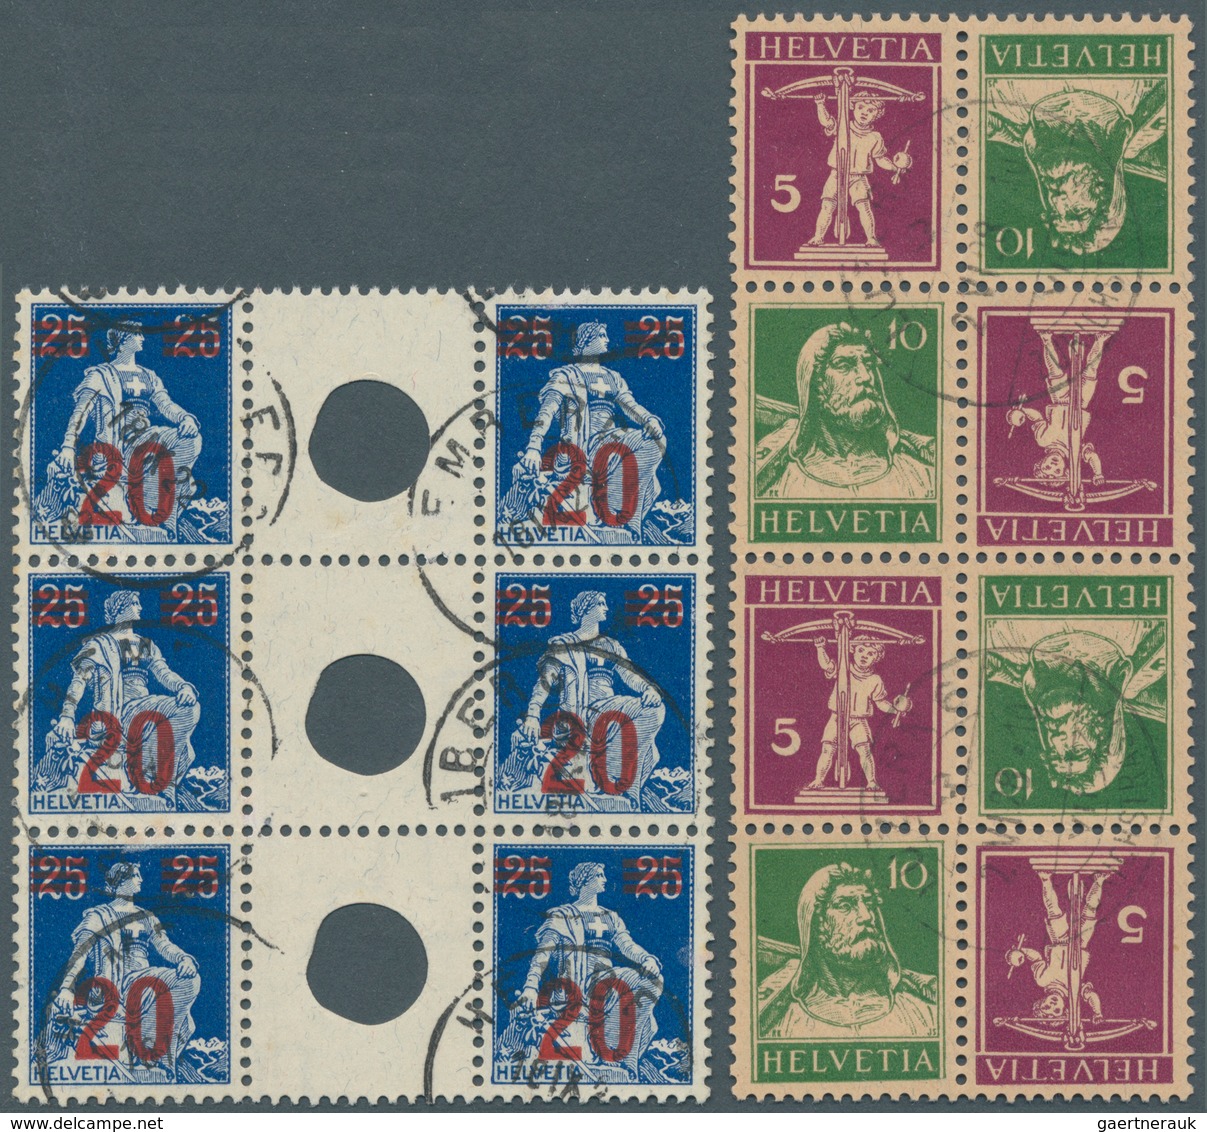 Schweiz: 1908-1930, ZUSAMMENDRUCKE UND BOGEN: Umfangreiche Kollektion von 41 kompletten Bogen (9 Zus